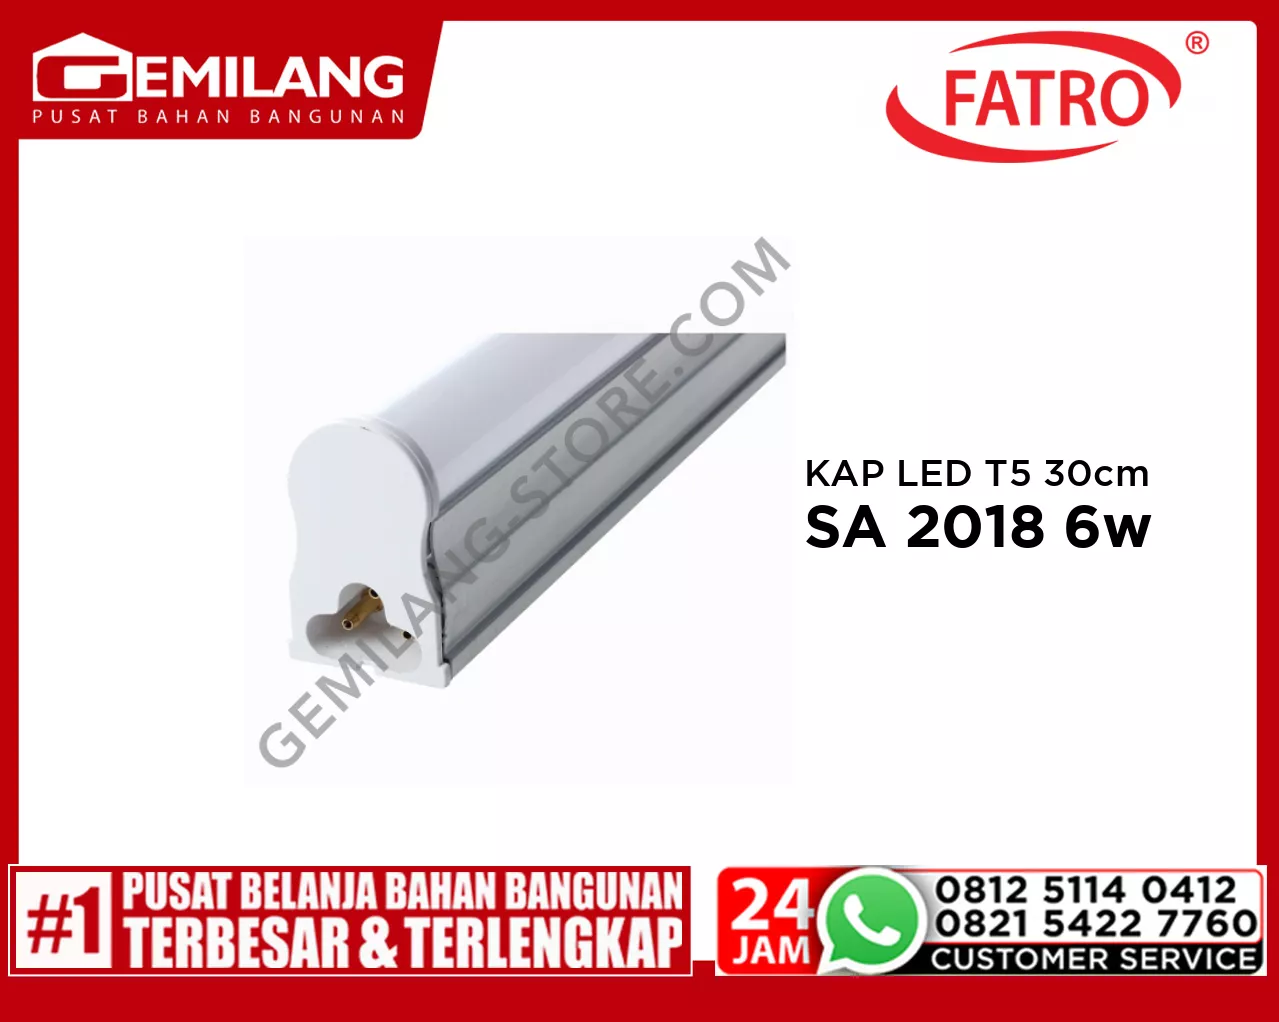 FATRO KAP LED T5 30cm W.WH SA 2018 6w